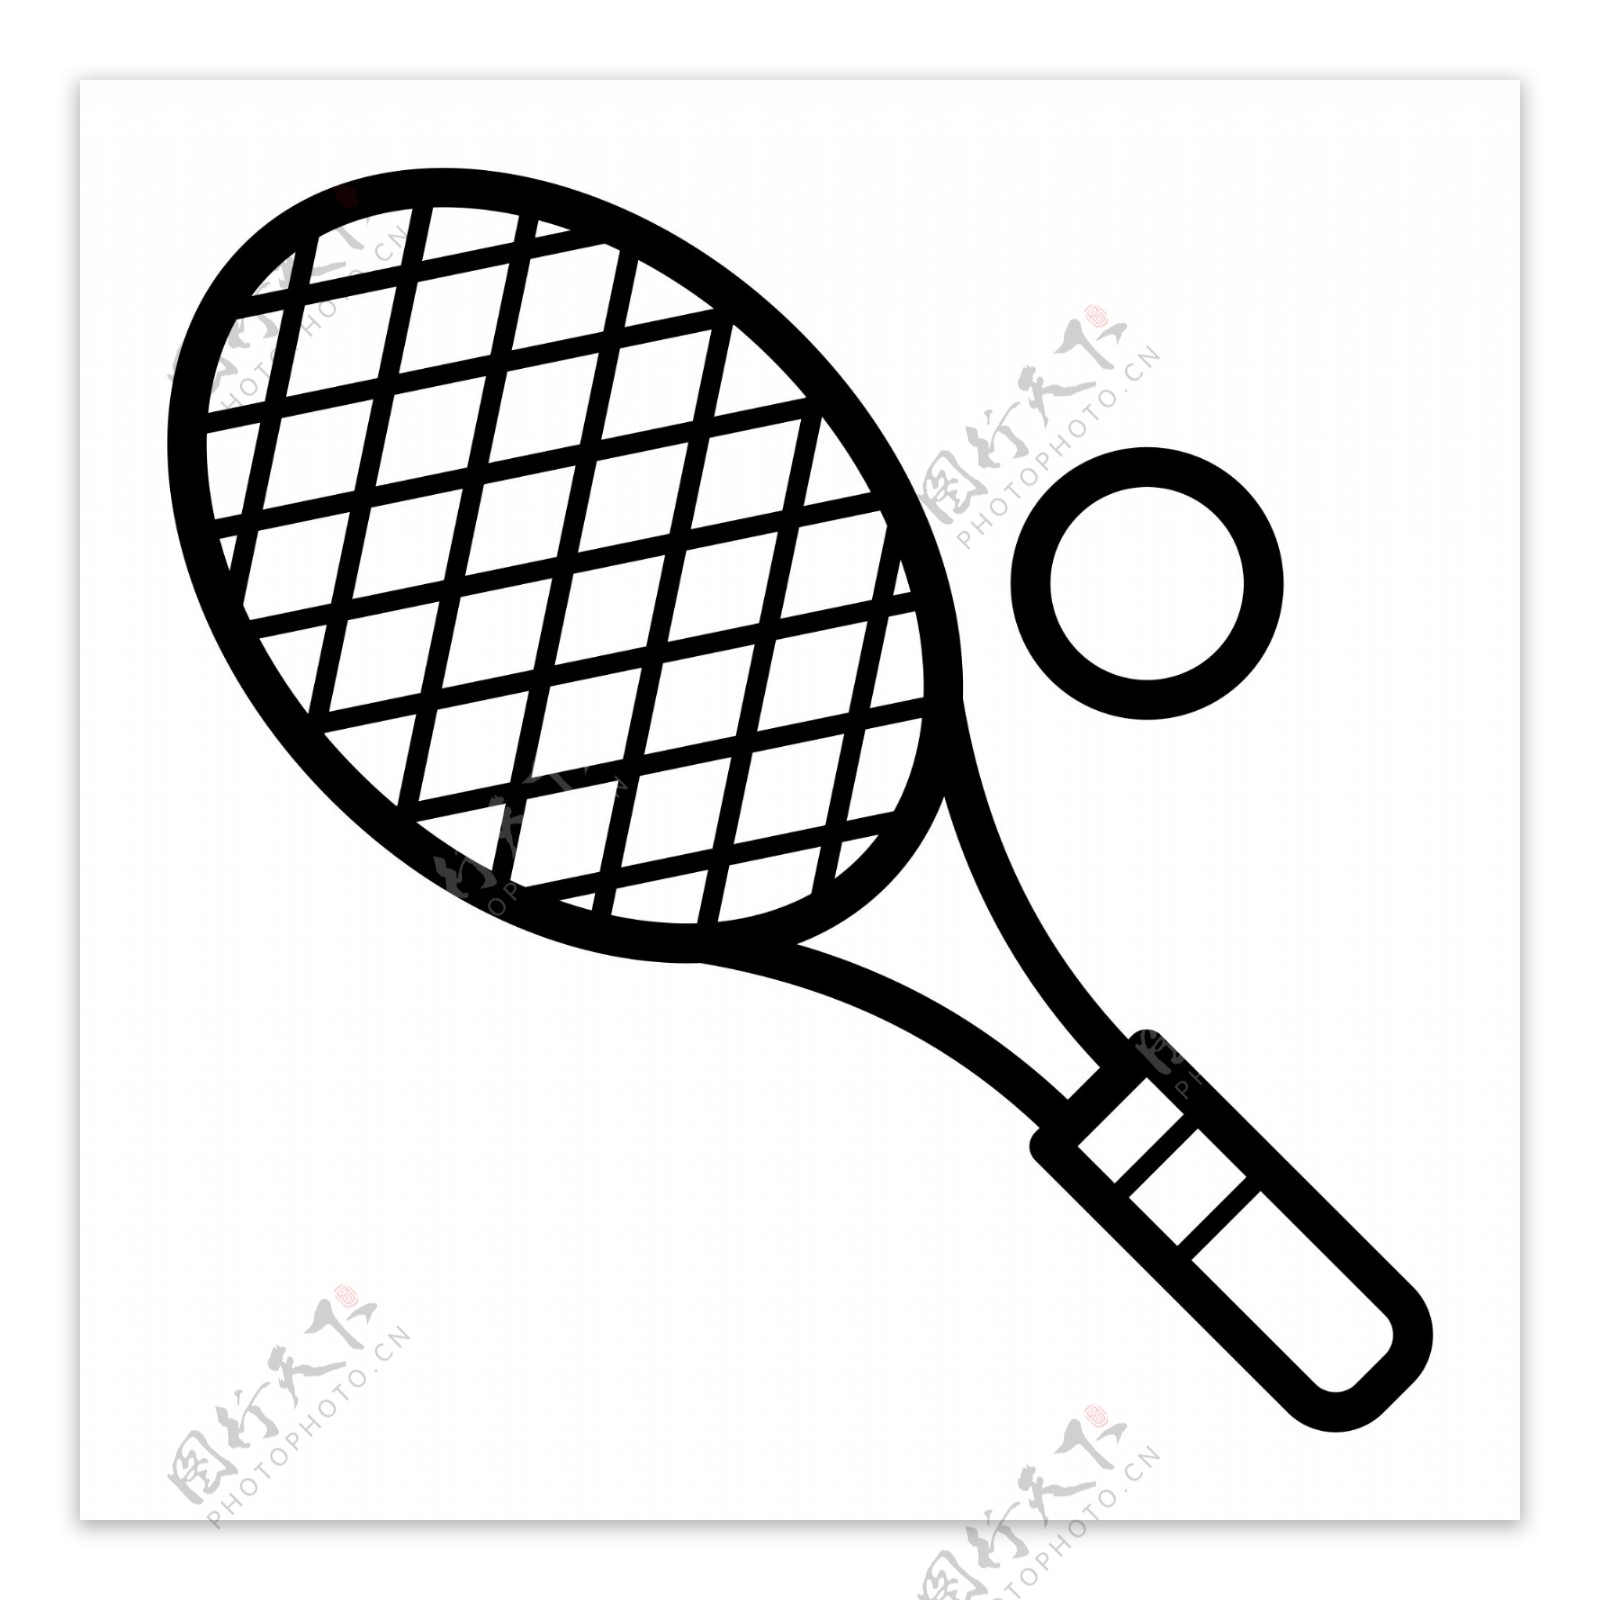 黑色圆弧网球拍子元素